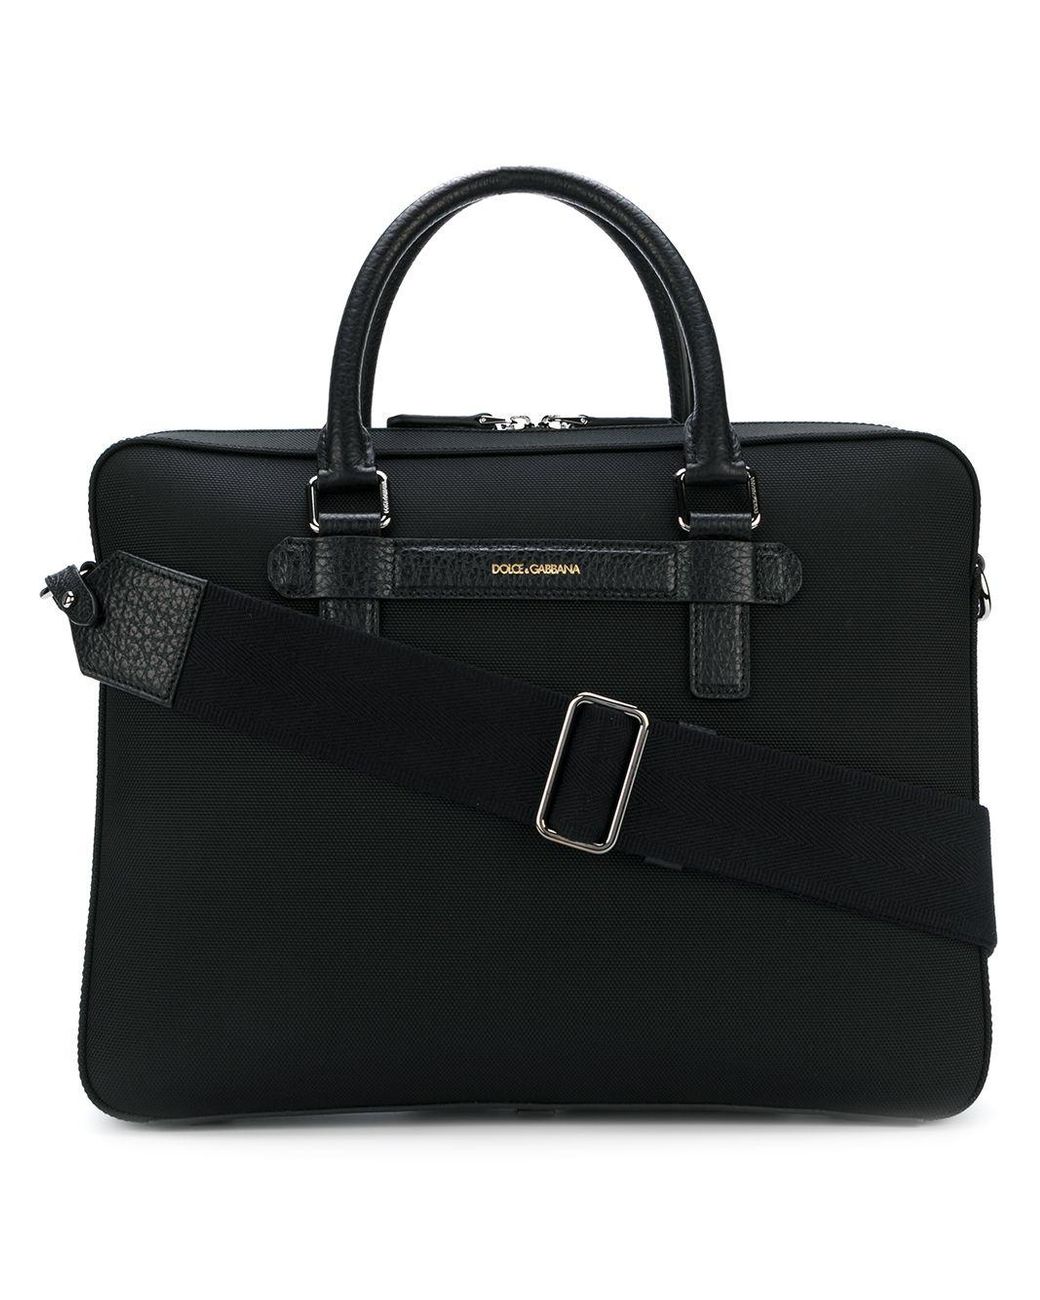 Dolce & Gabbana Cotton Slim Briefcase in Black for Men - Save 65% - Lyst